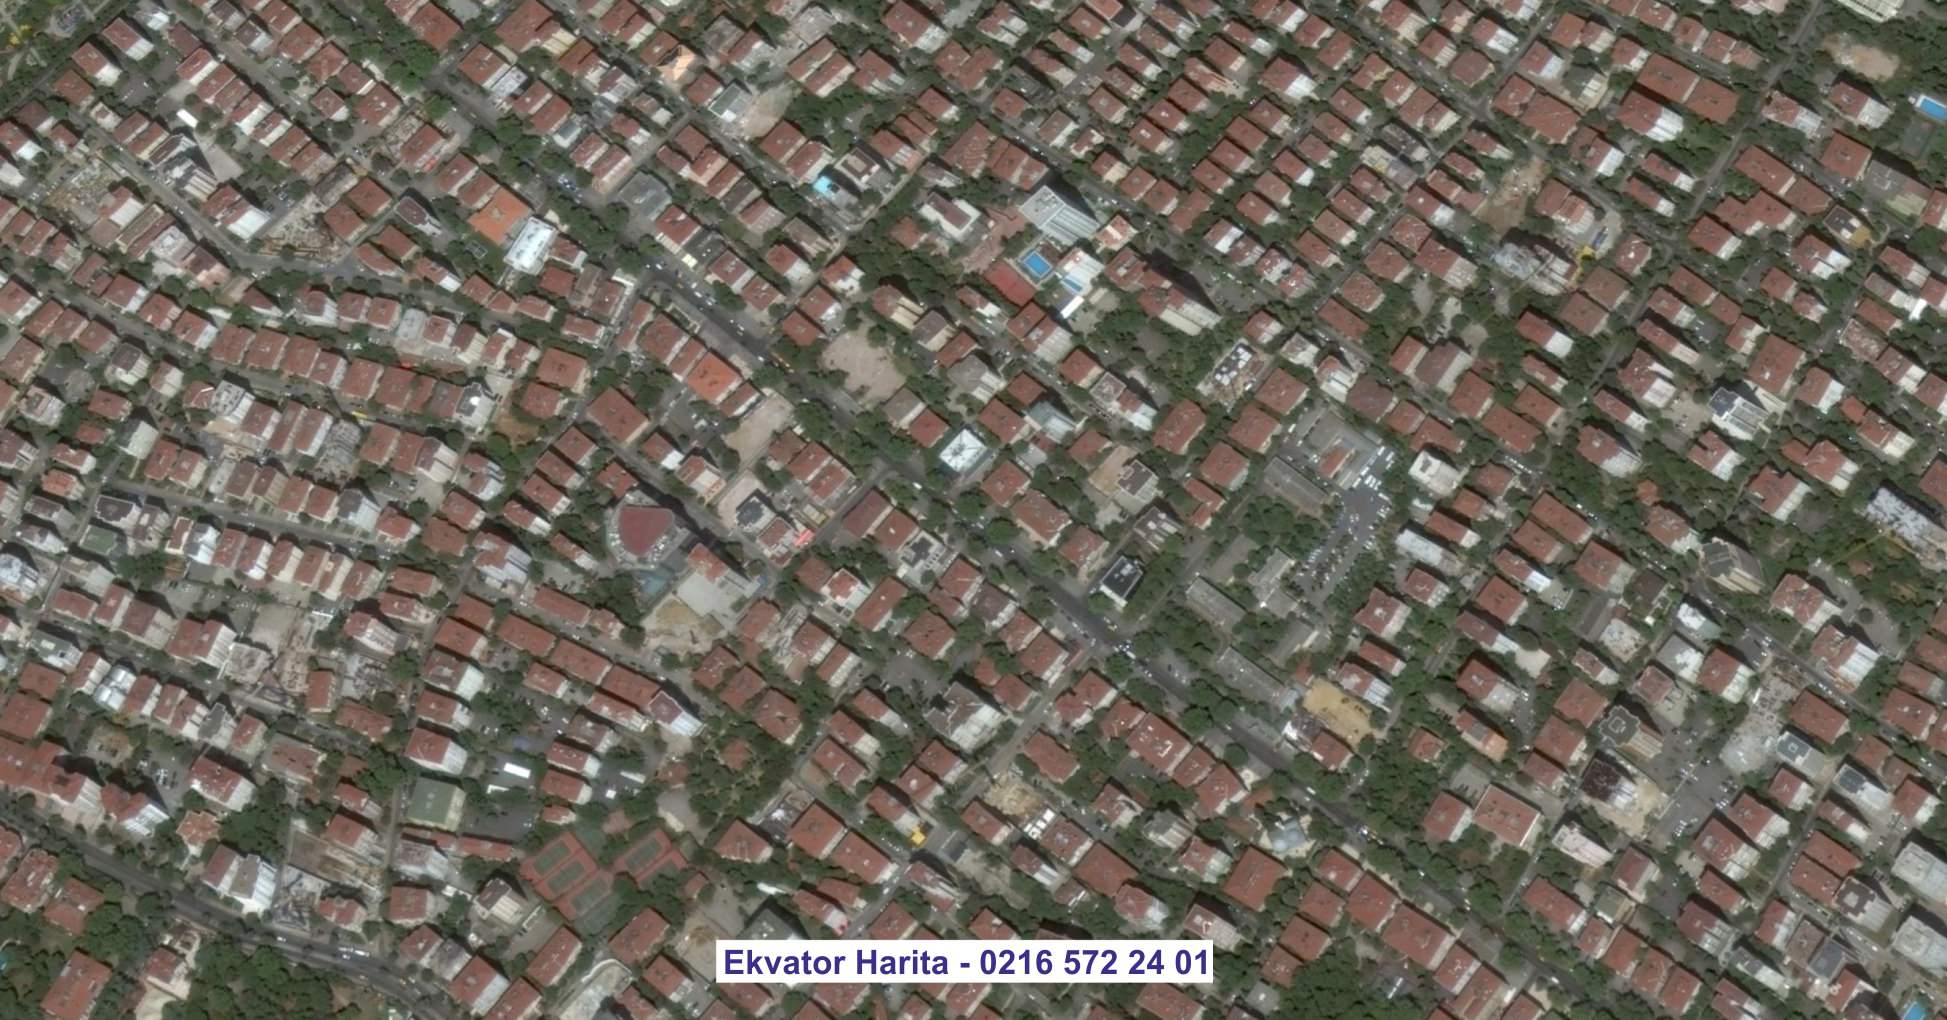 Lazkiye Uydu Görüntüsü Örnek Fotoğrafı